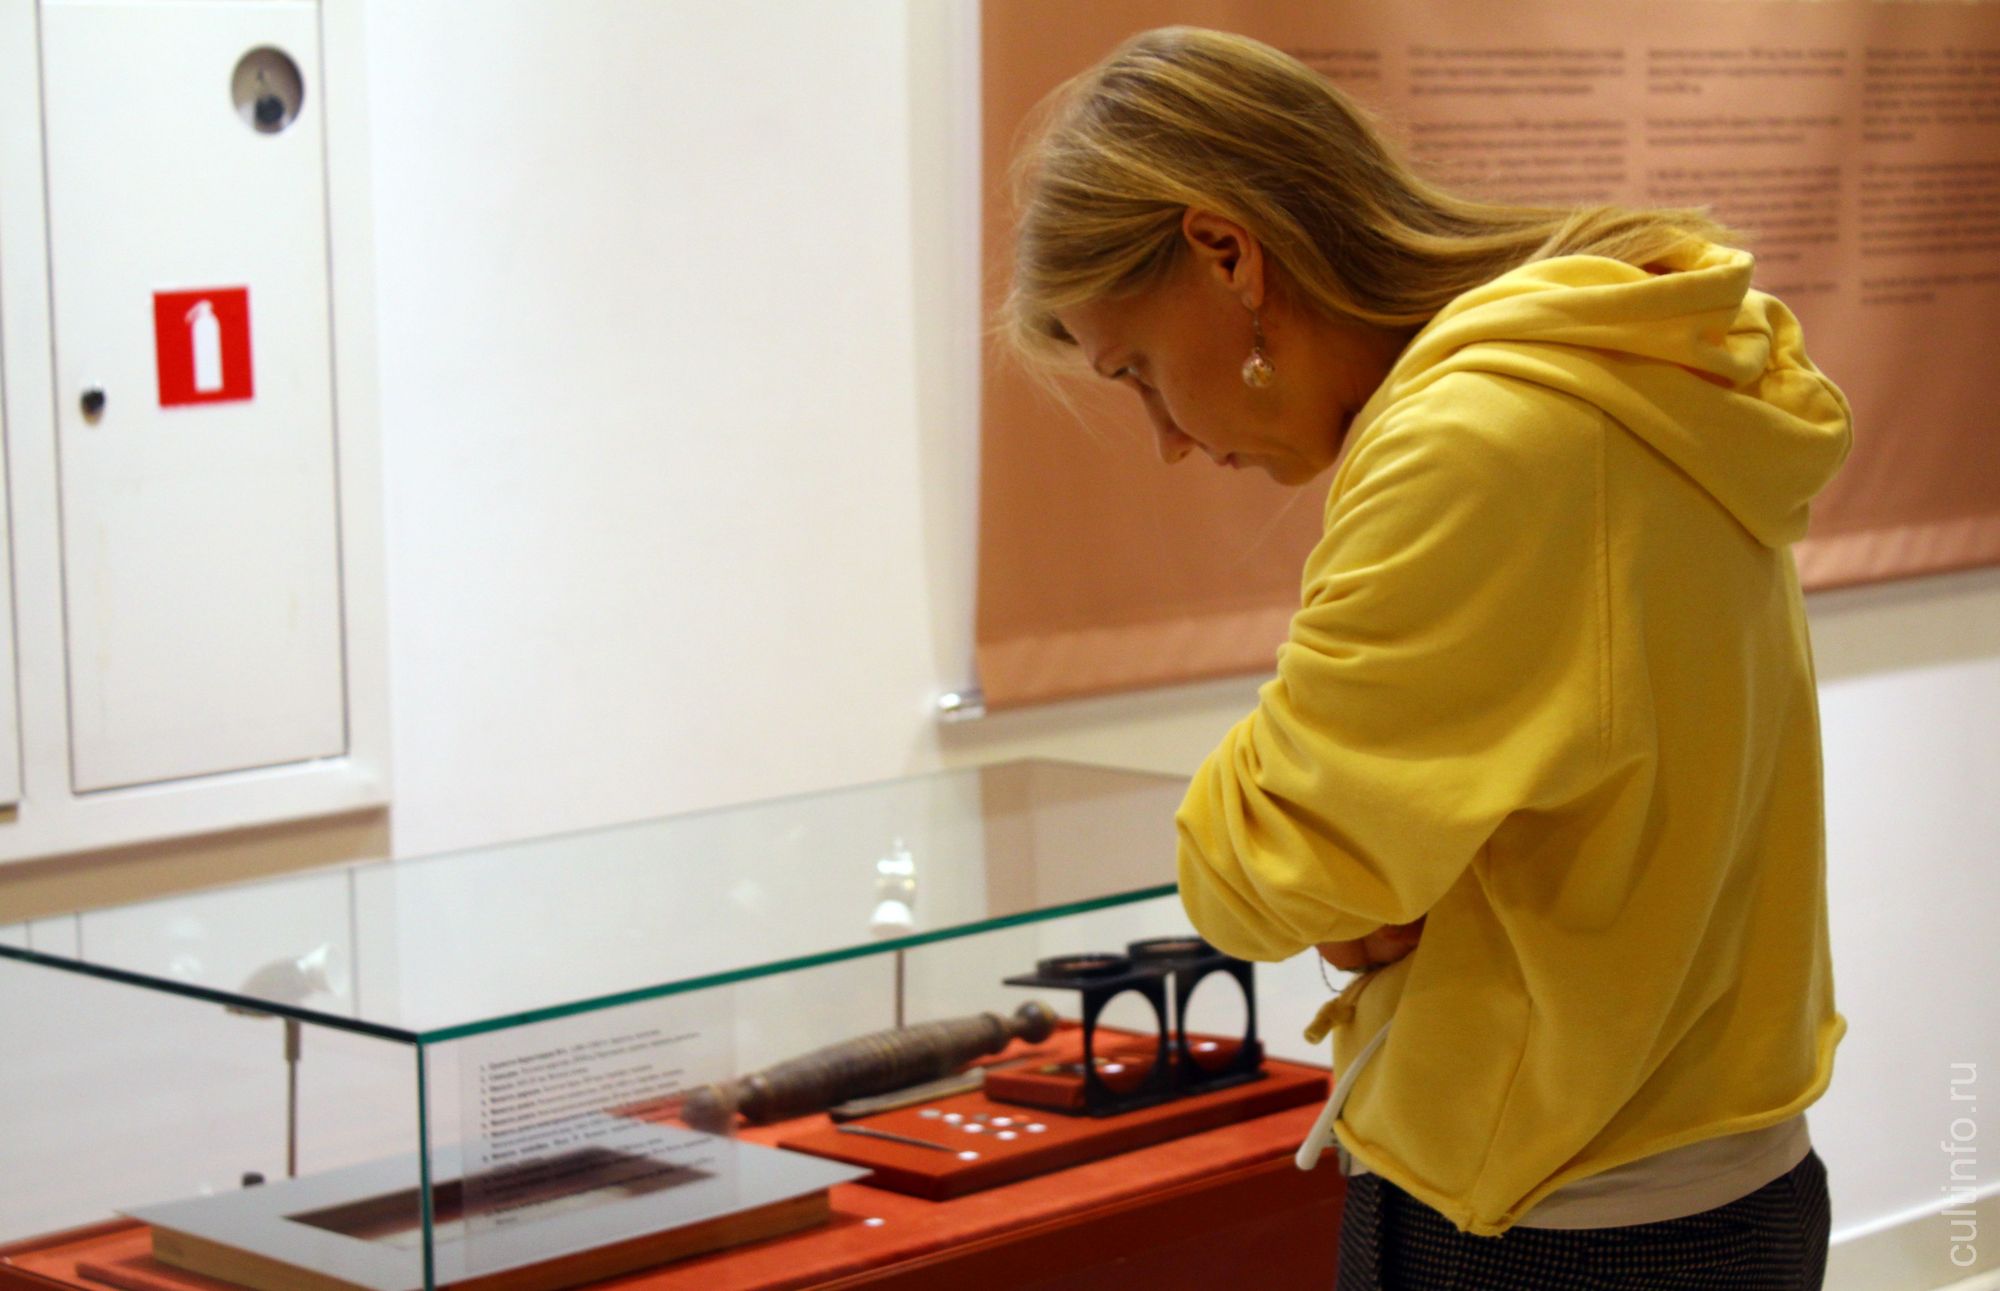 Выставка «Древняя Вологда. Антропологическое портфолио» открылась в Юго-Западной башне Вологодского кремля.